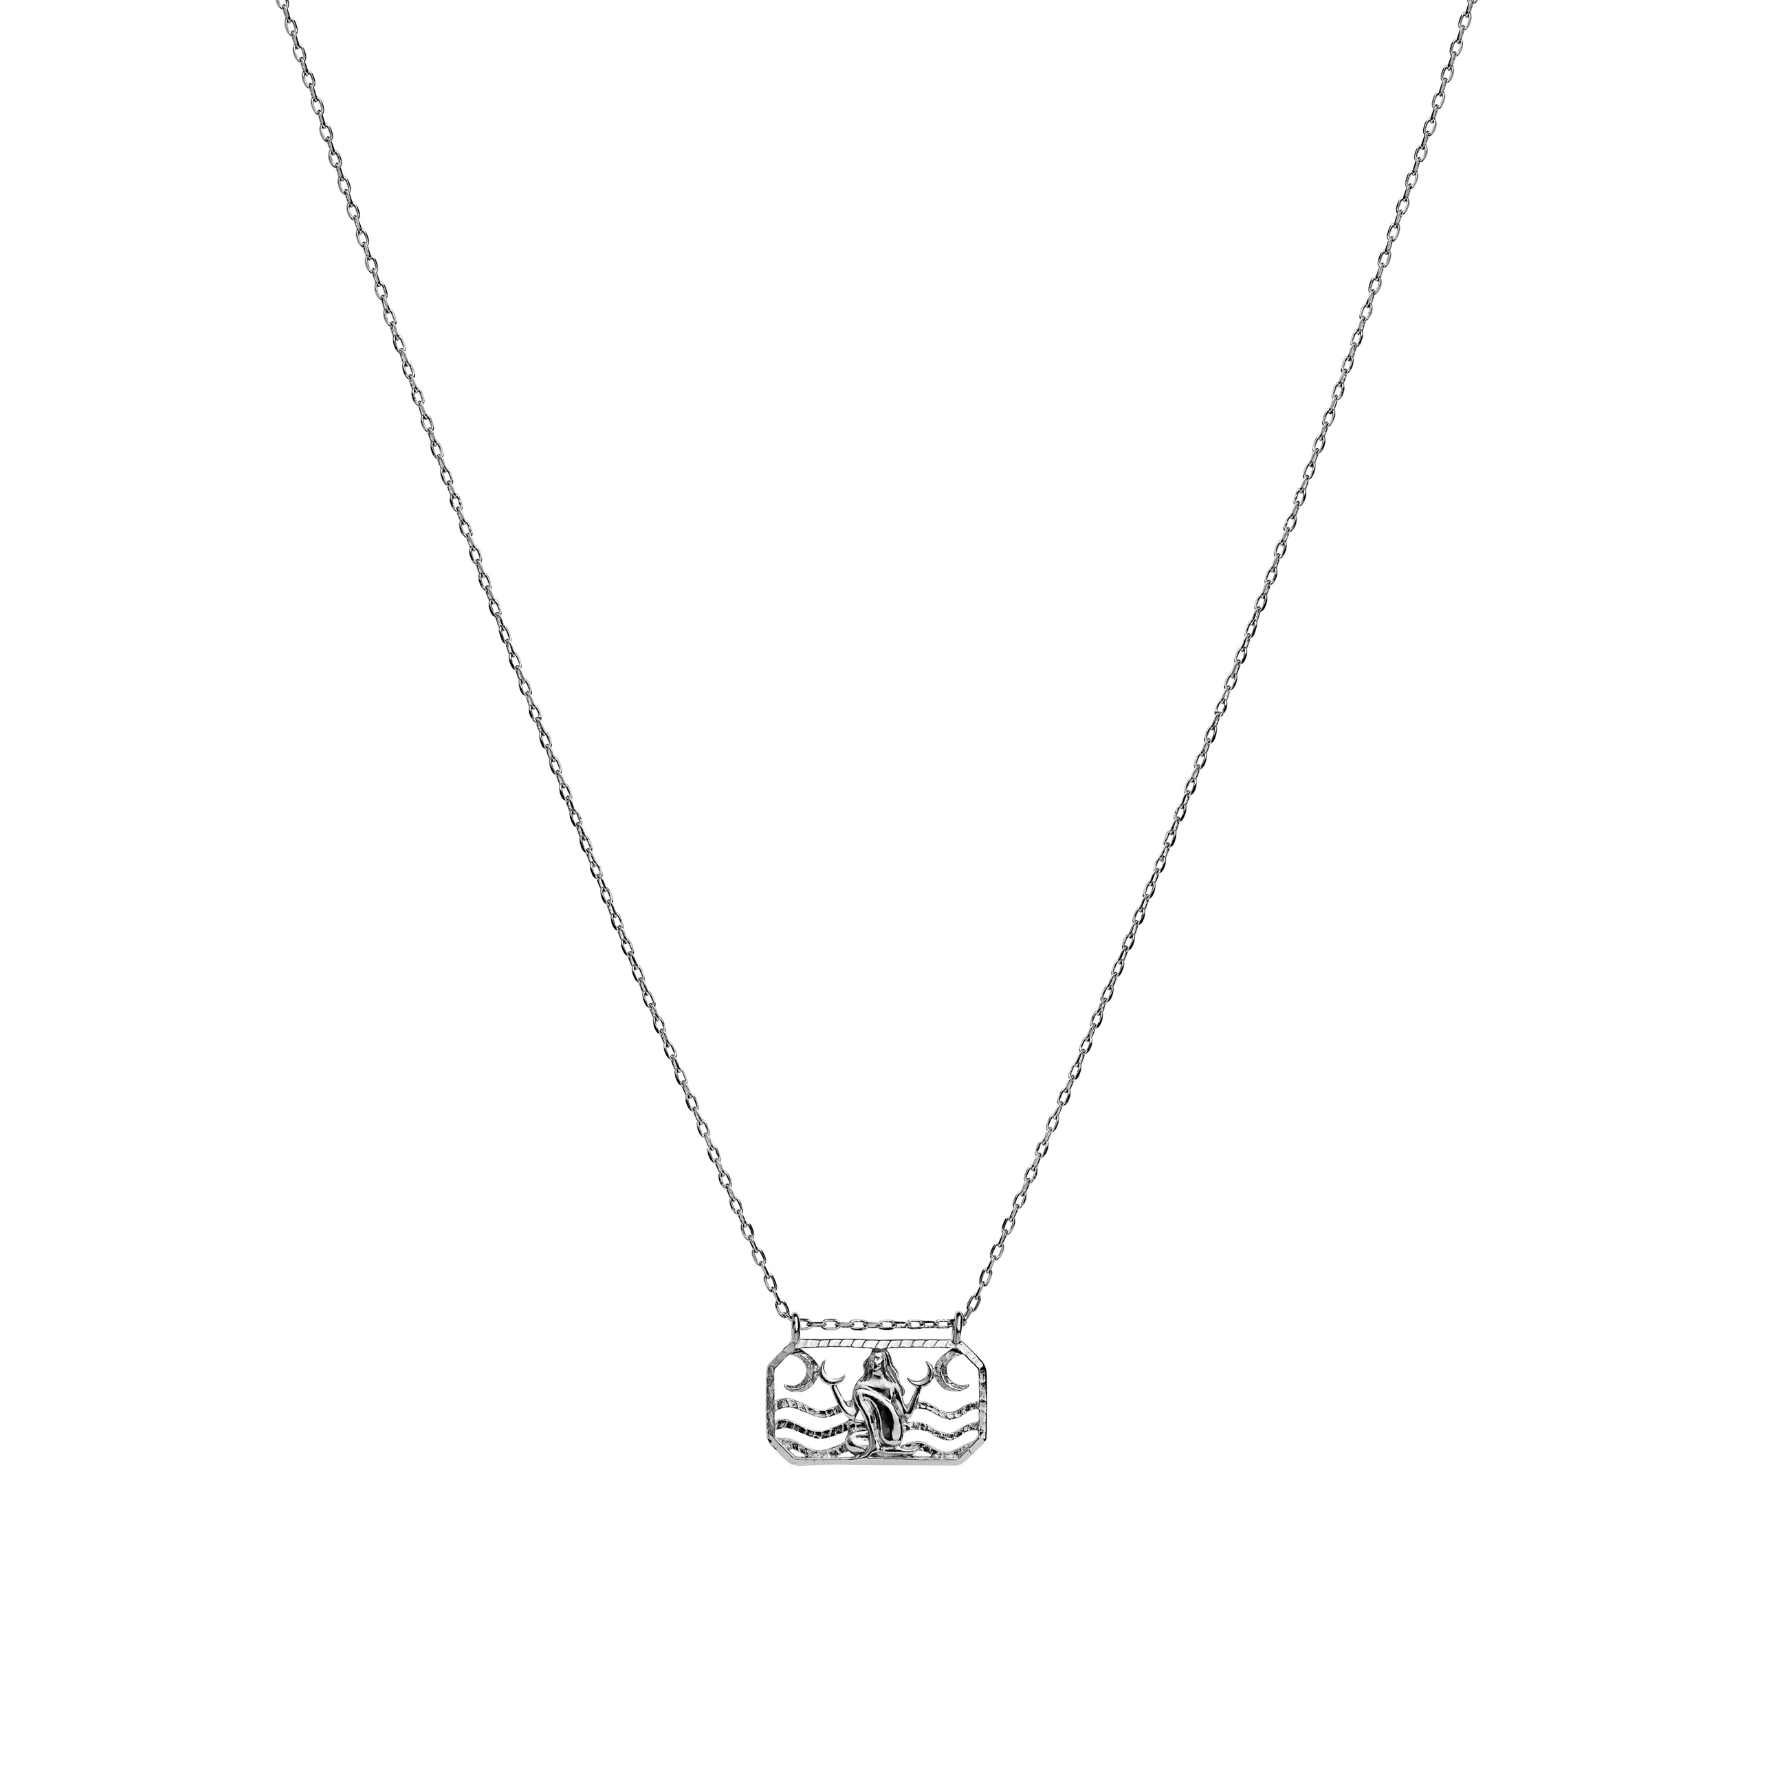 Cancer Zodiac Necklaces Jewelry For Women - BeGlare